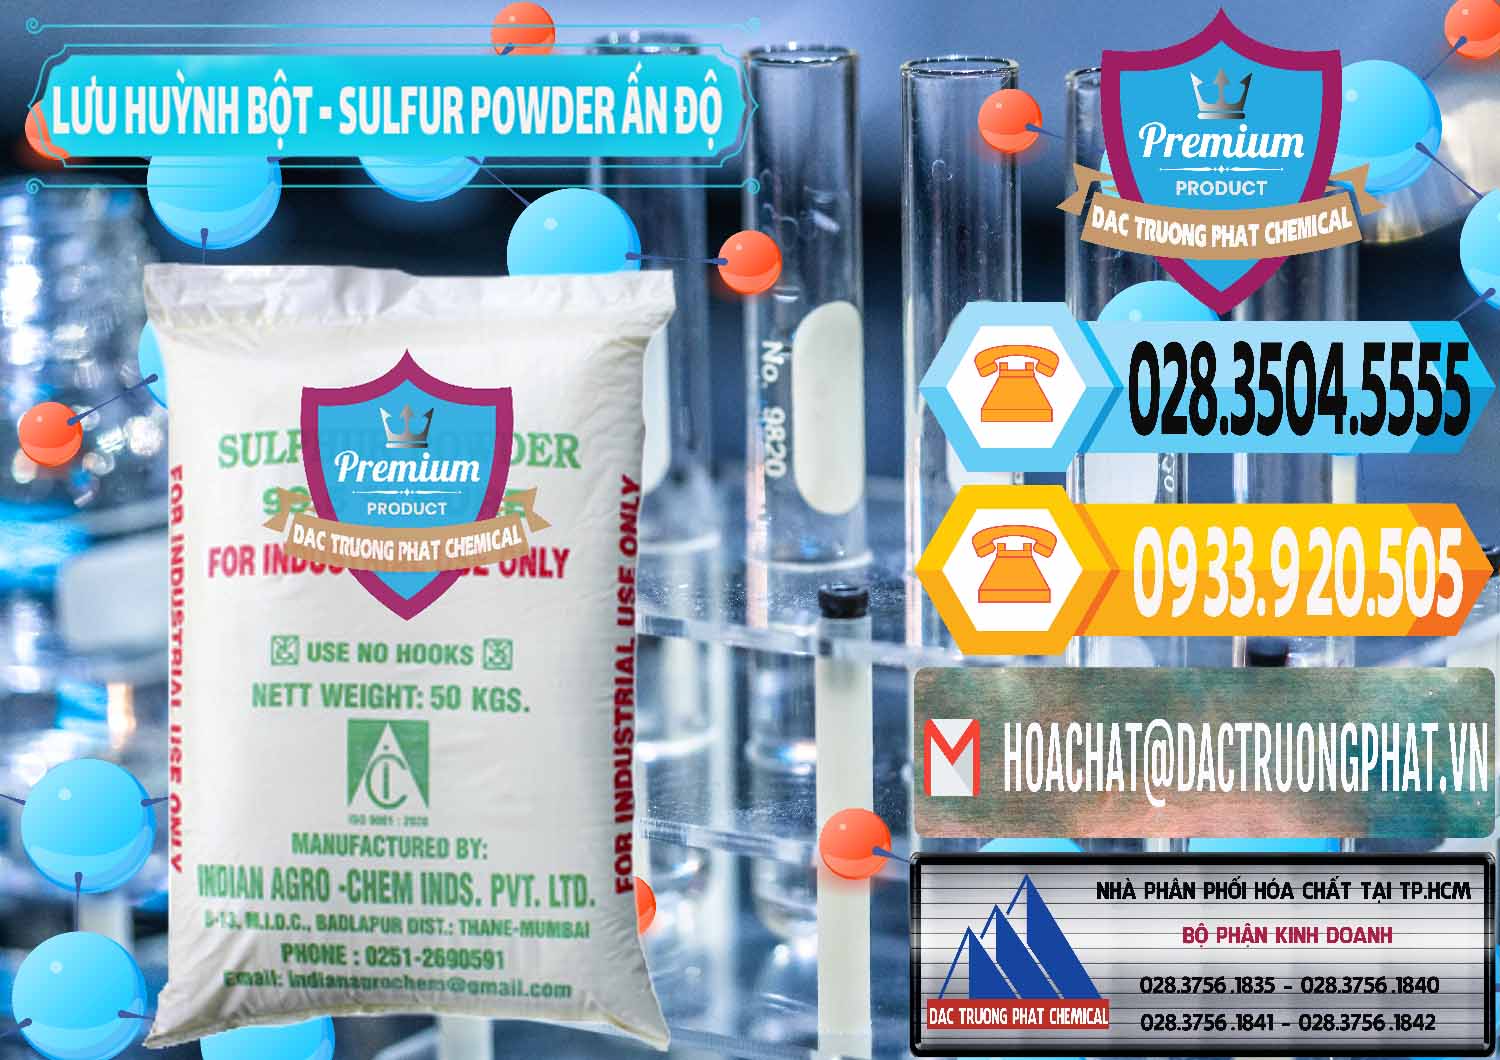 Cty chuyên bán - cung ứng Lưu huỳnh Bột - Sulfur Powder Ấn Độ India - 0347 - Nơi phân phối _ cung cấp hóa chất tại TP.HCM - hoachattayrua.net